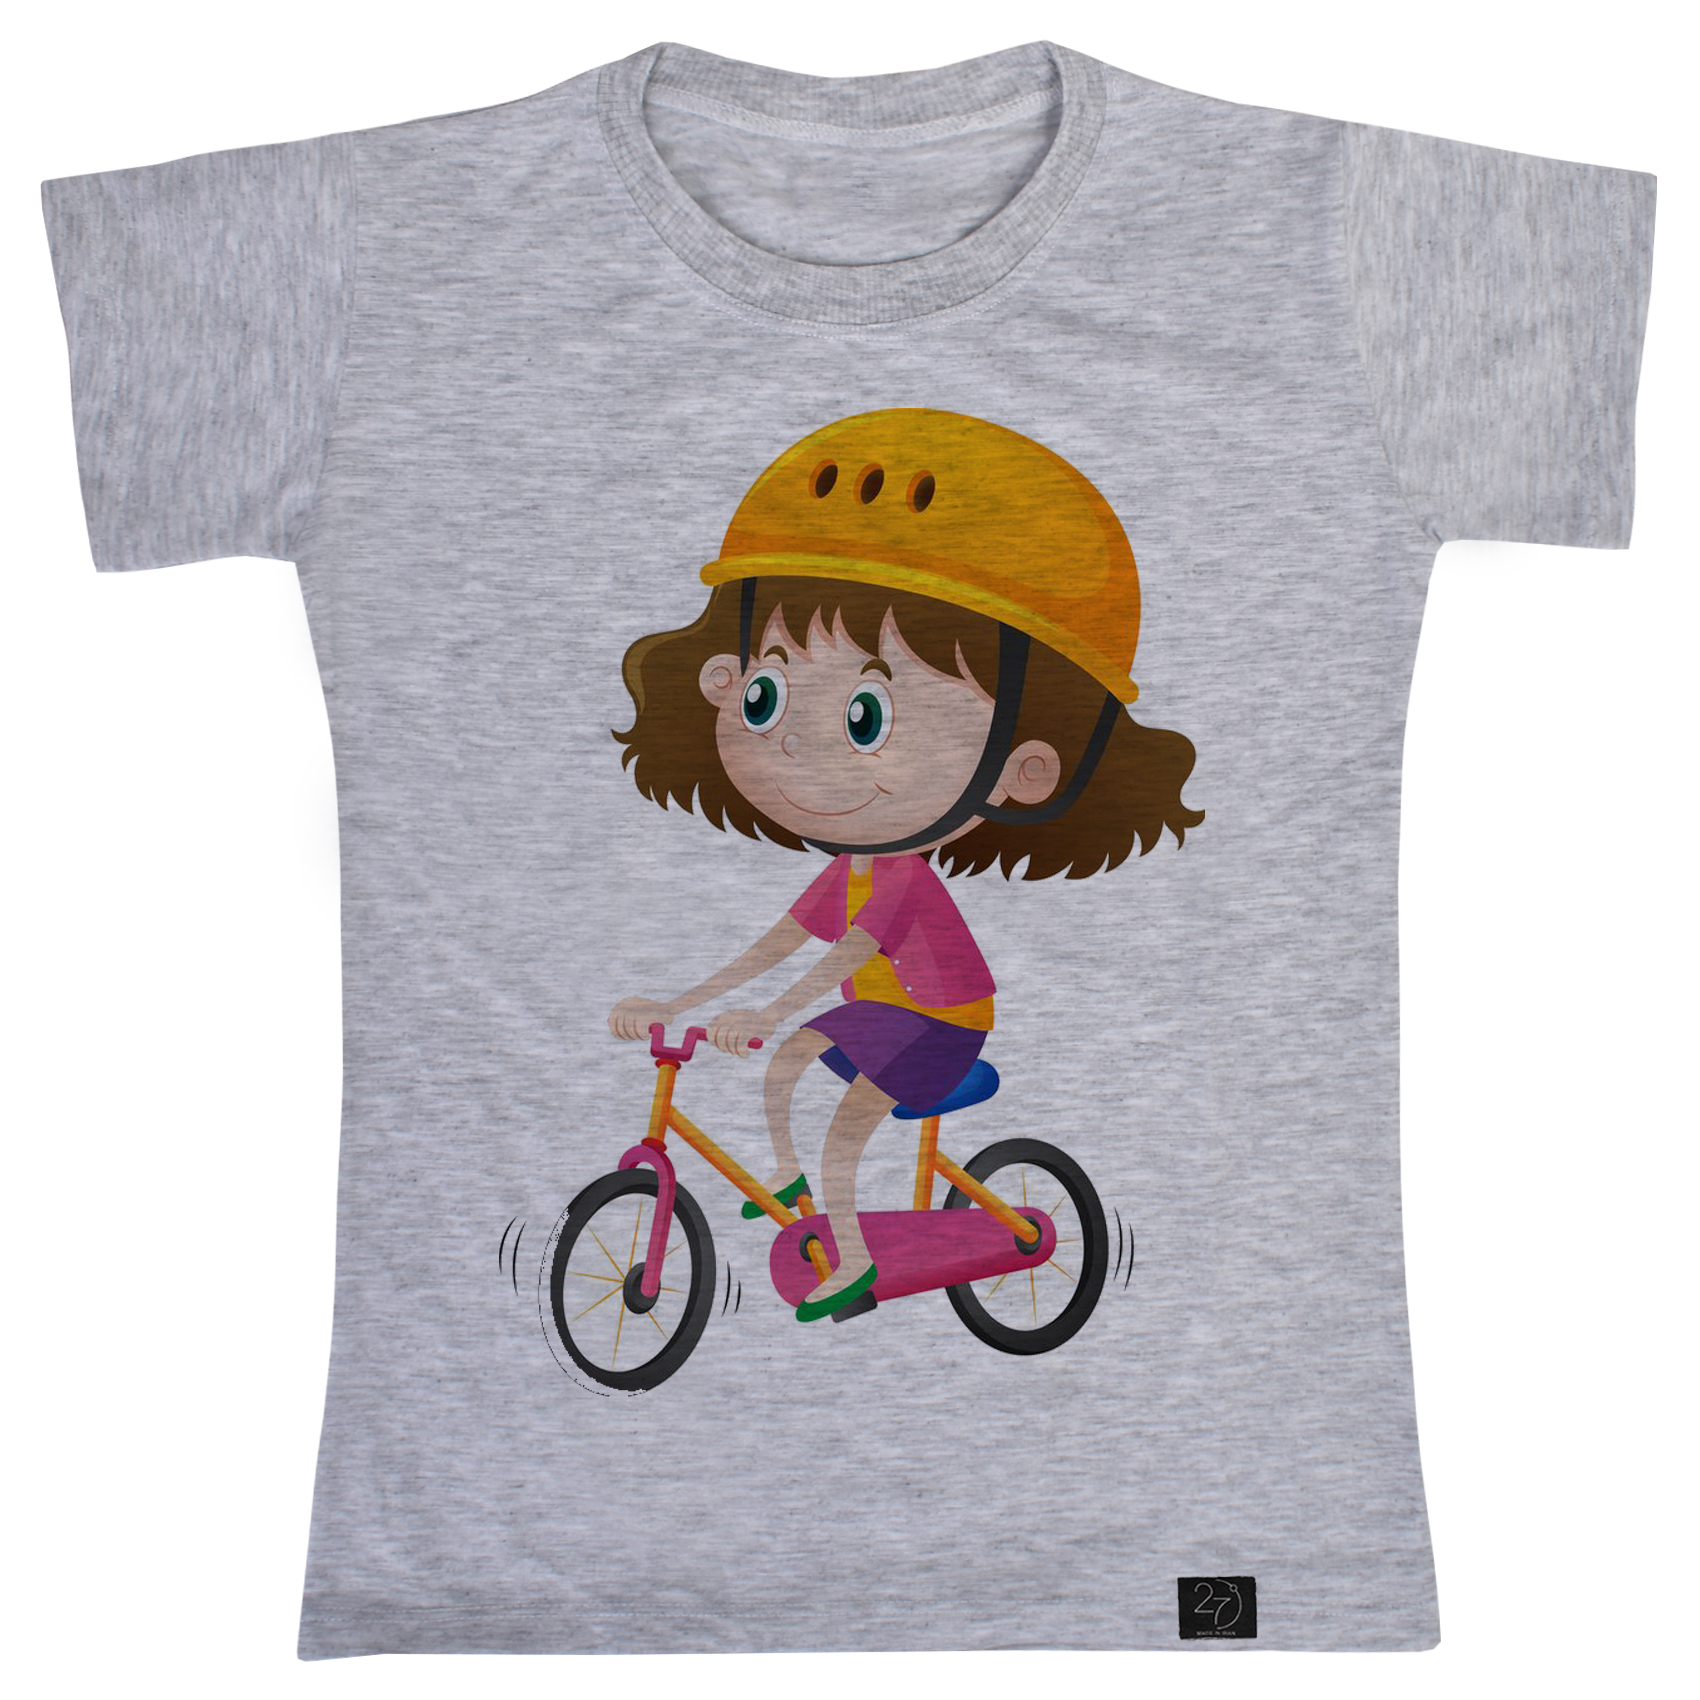 تی شرت دخترانه 27 مدل دختر دوچرخه سوار کد G80